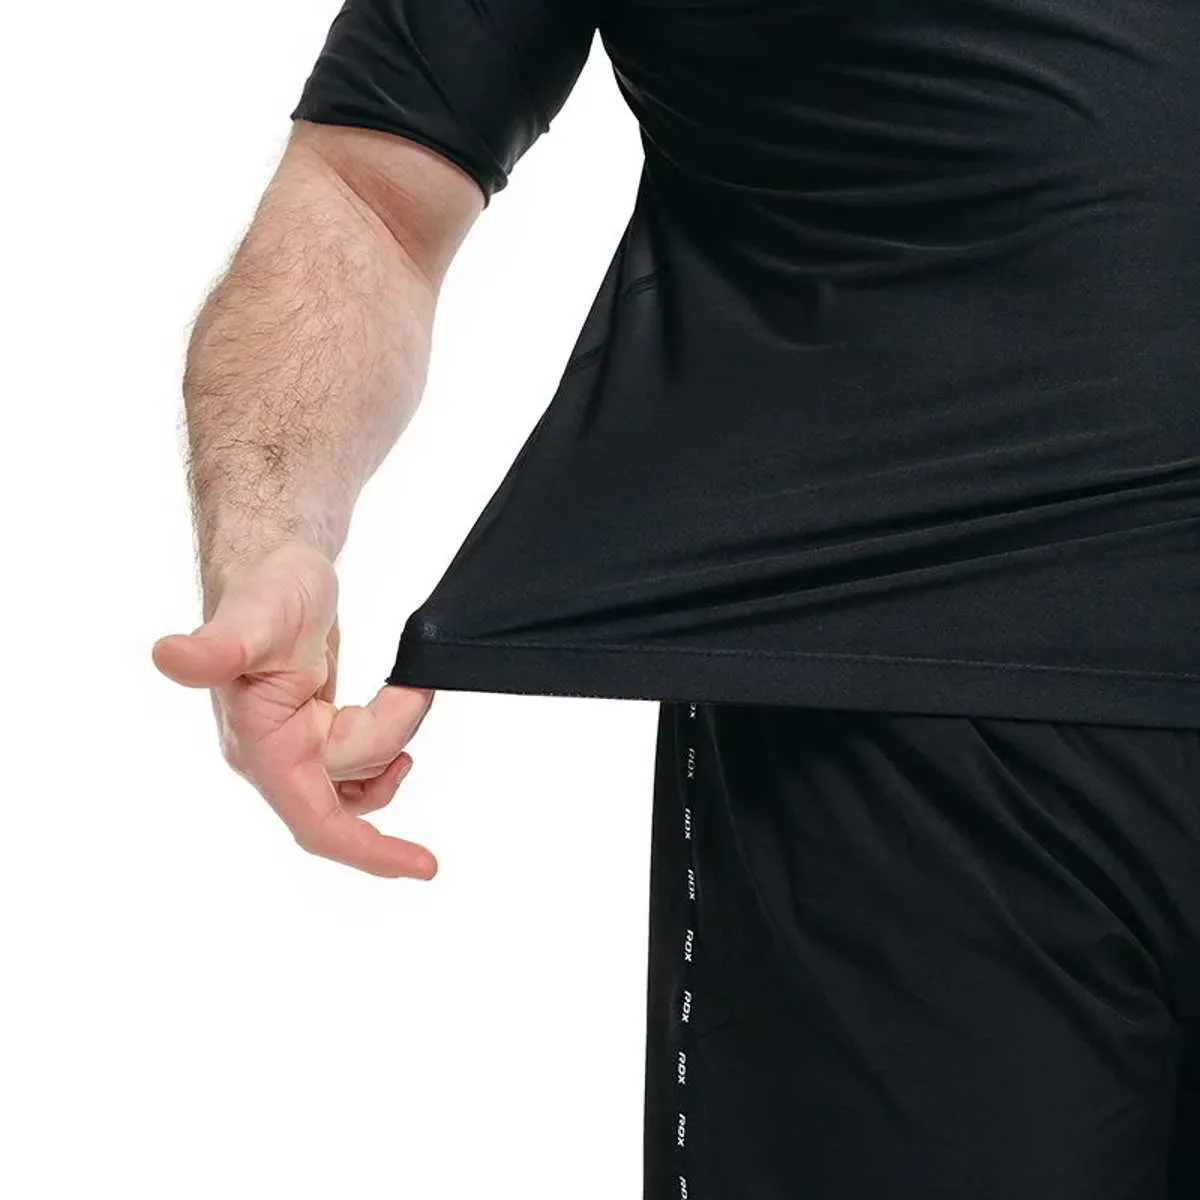 T-shirt de sudation sans manches noir avec fermeture éclair